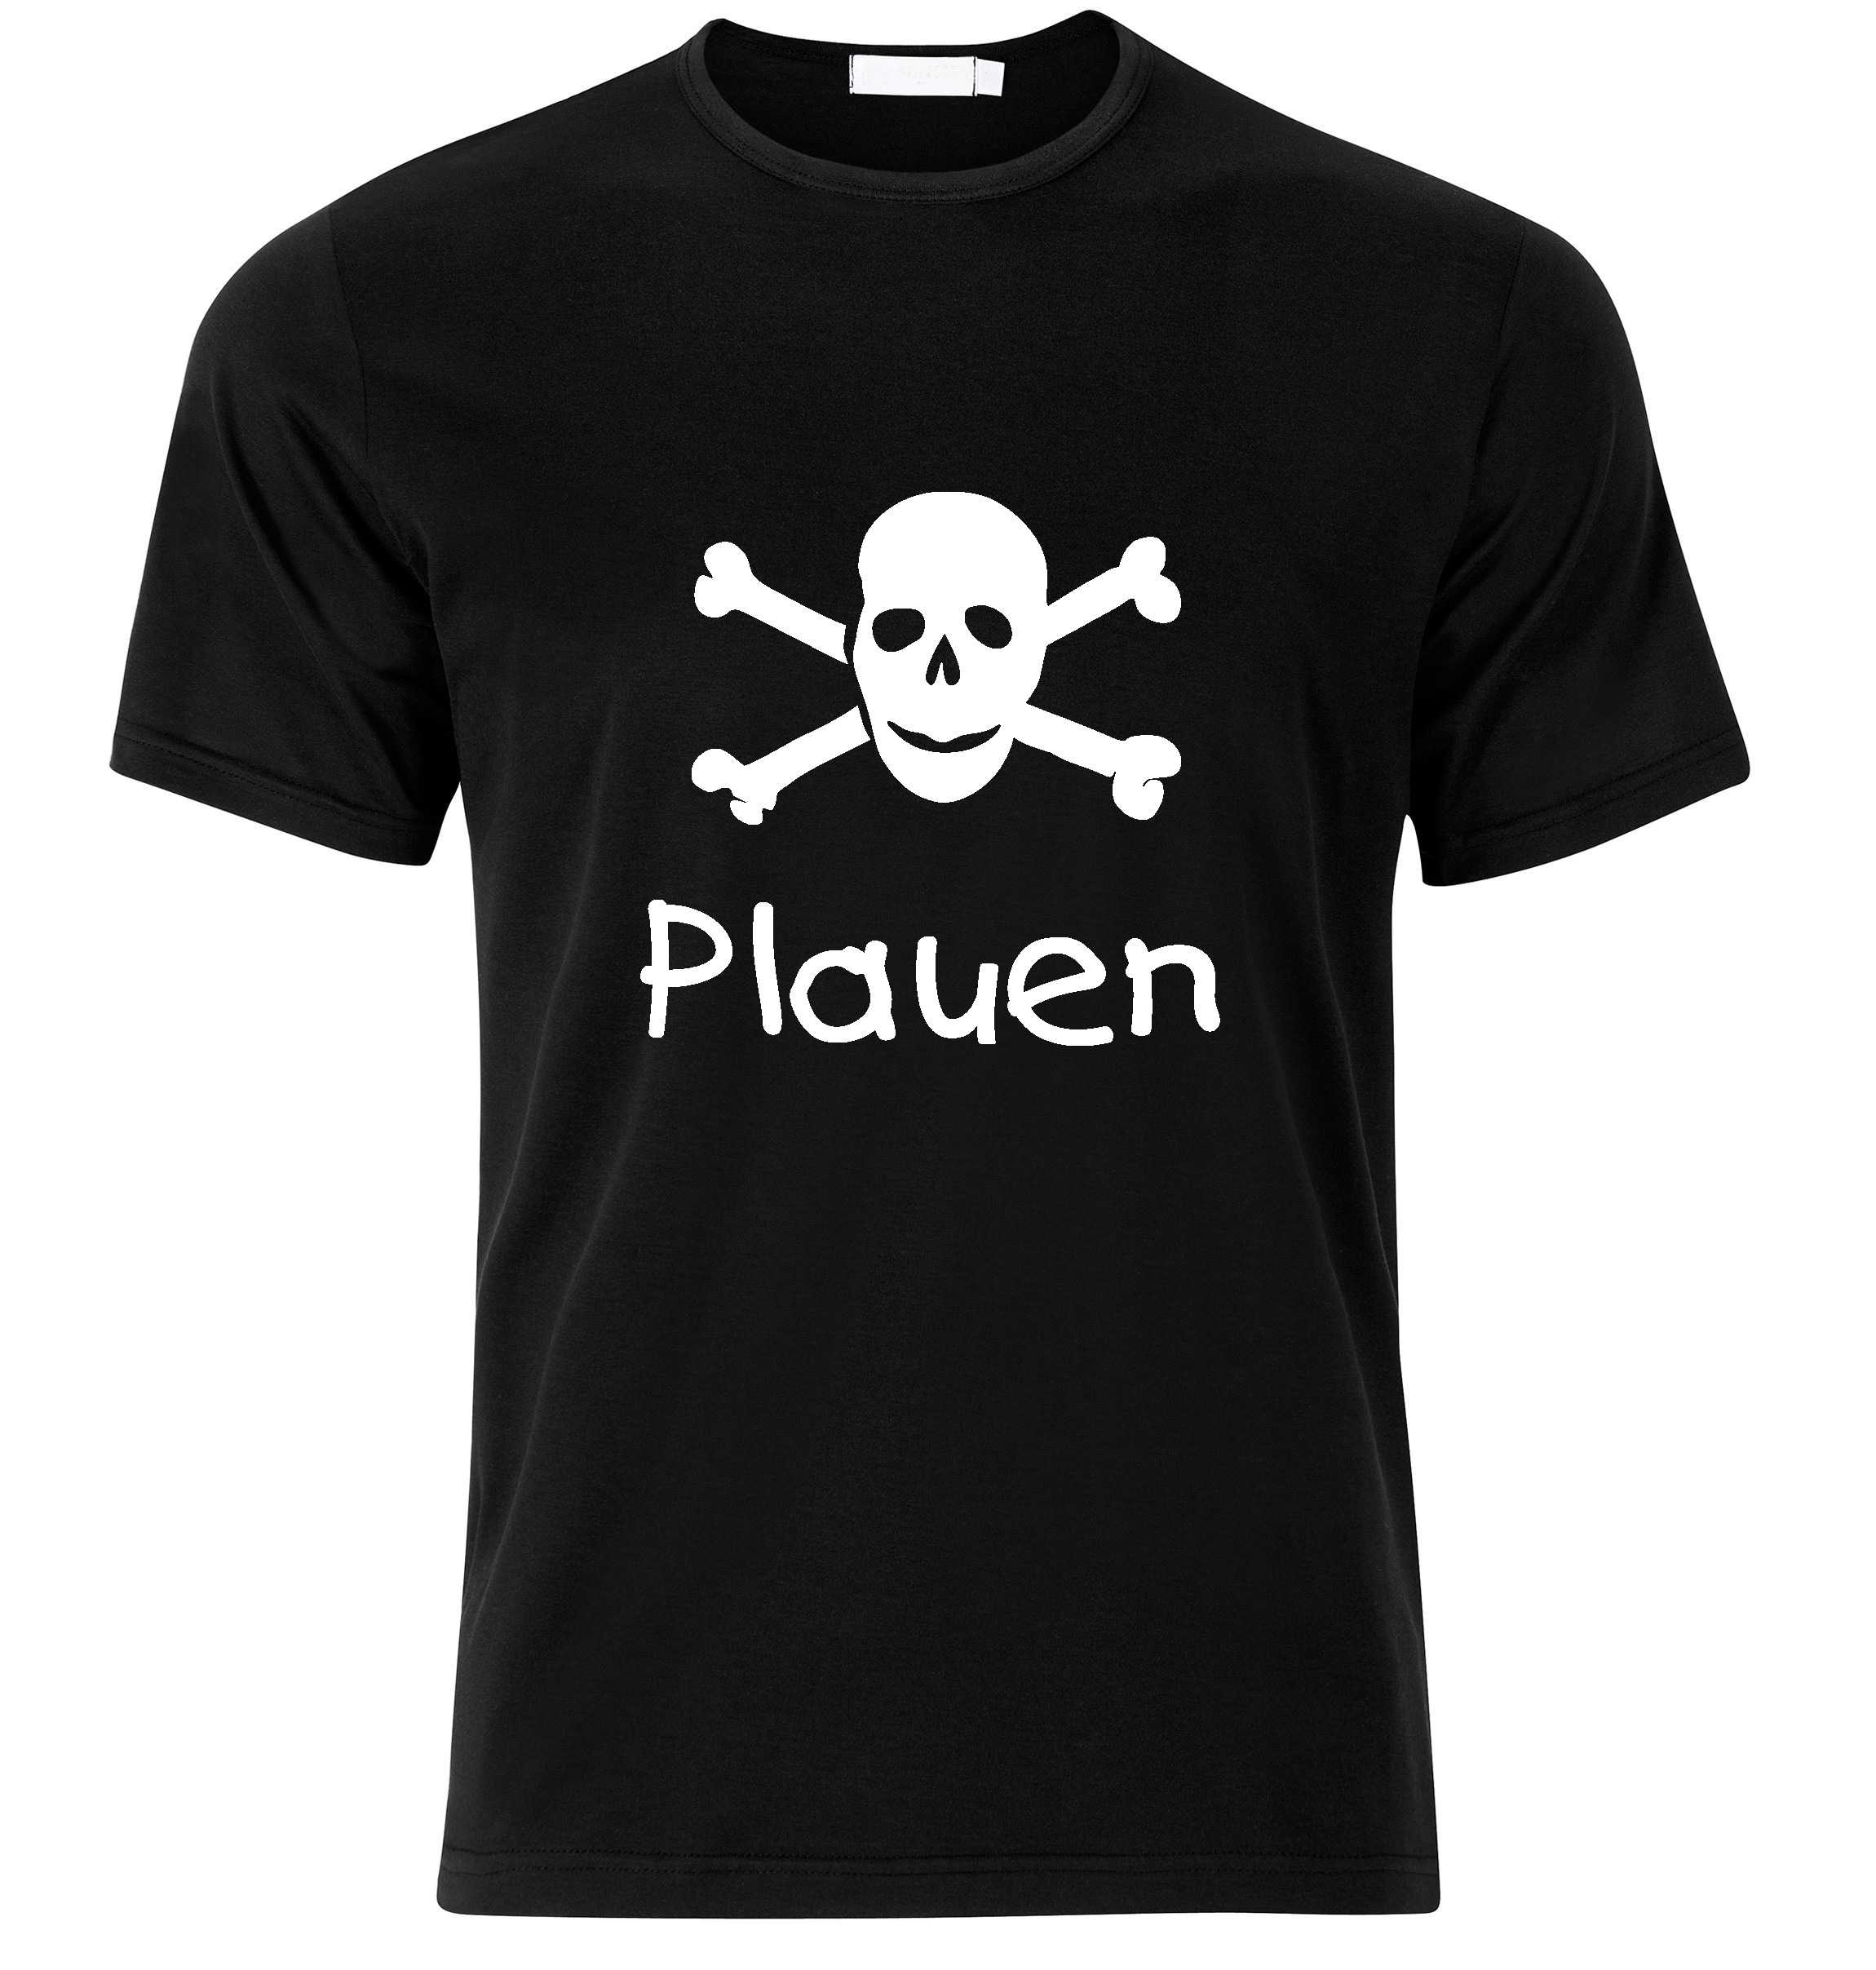 T-Shirt Plauen Jolly Roger, Totenkopf